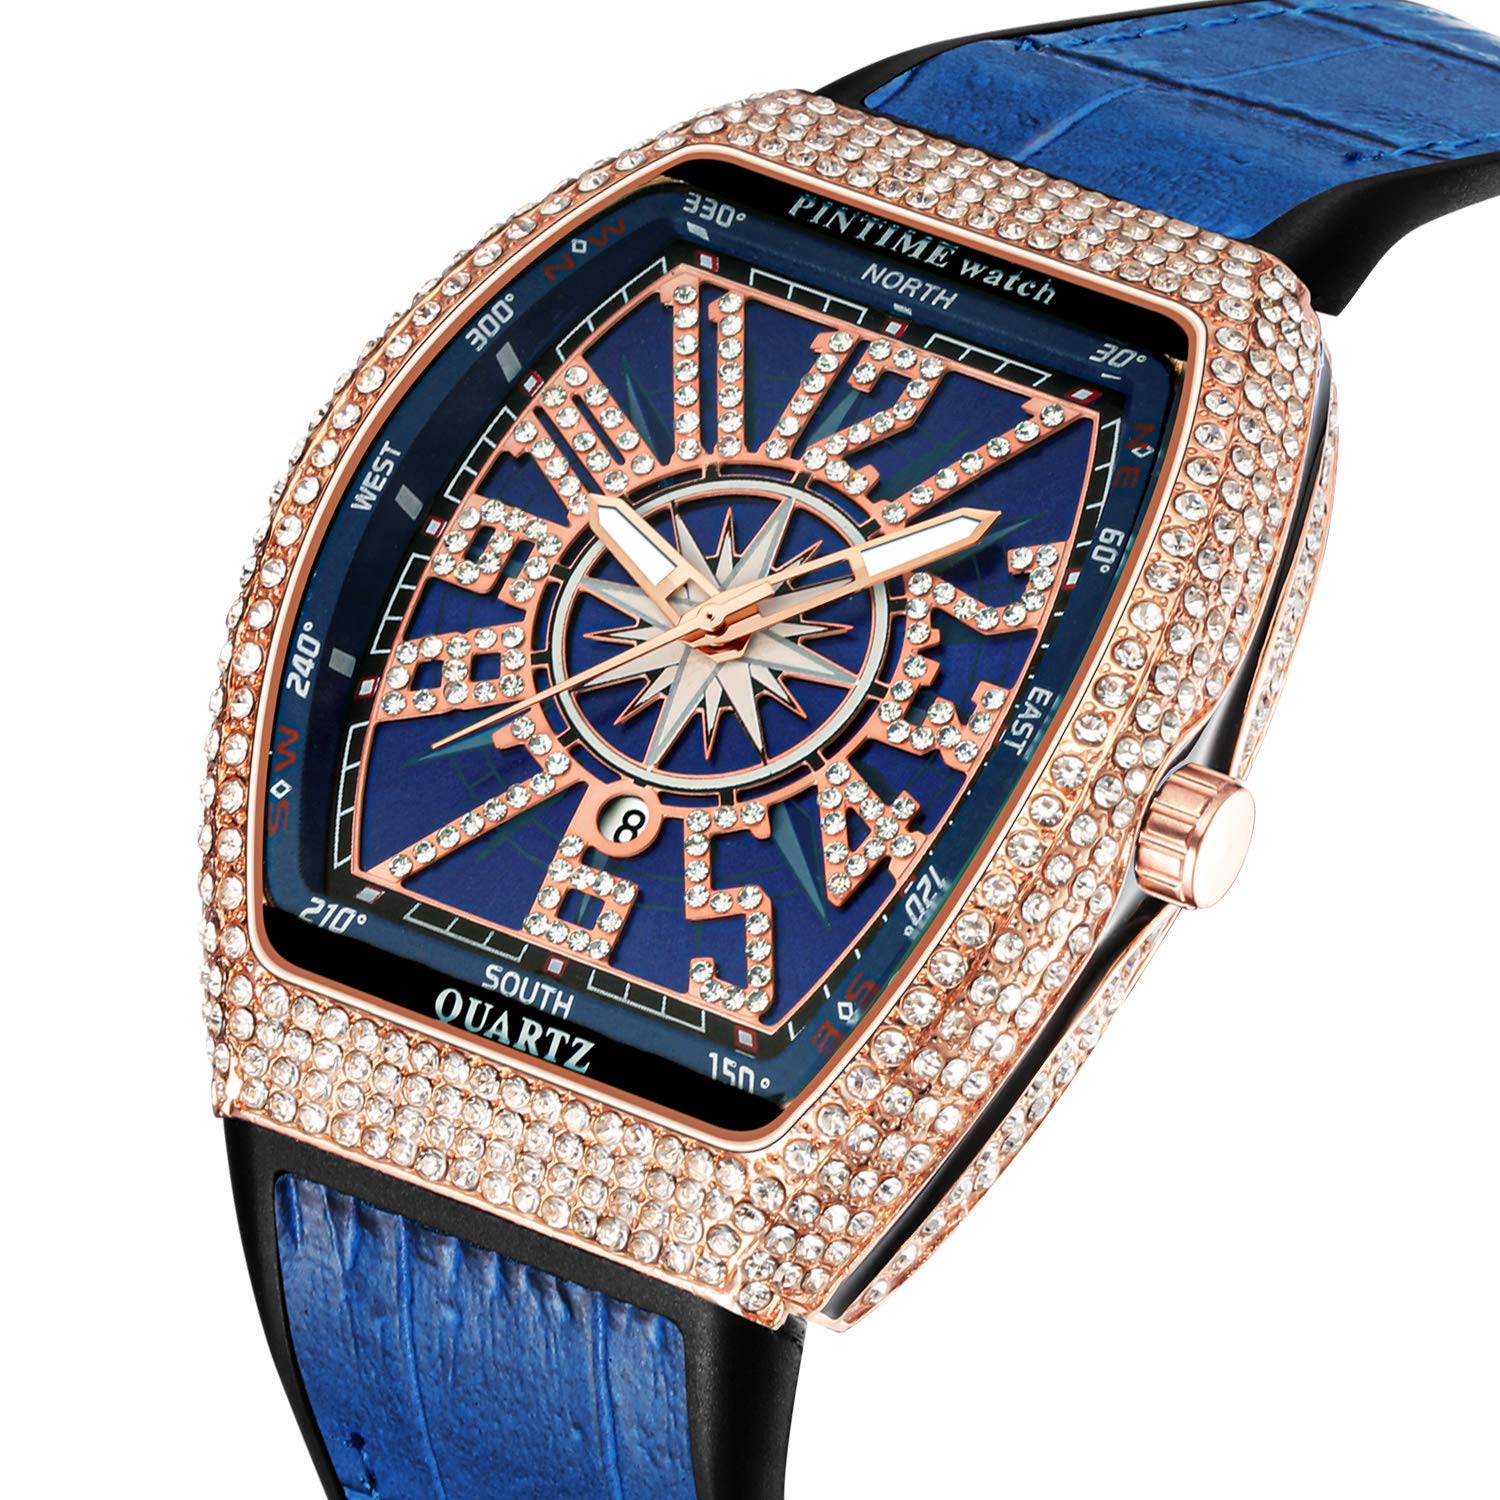 PINTIME Luxus-Herren-Armbanduhr mit Kristall-Diamanten, Tonneau, modisch, glitzernd, wasserdicht, Quarz, analoge Armbanduhr für Herren, Lederband, Hip Hop Rapper